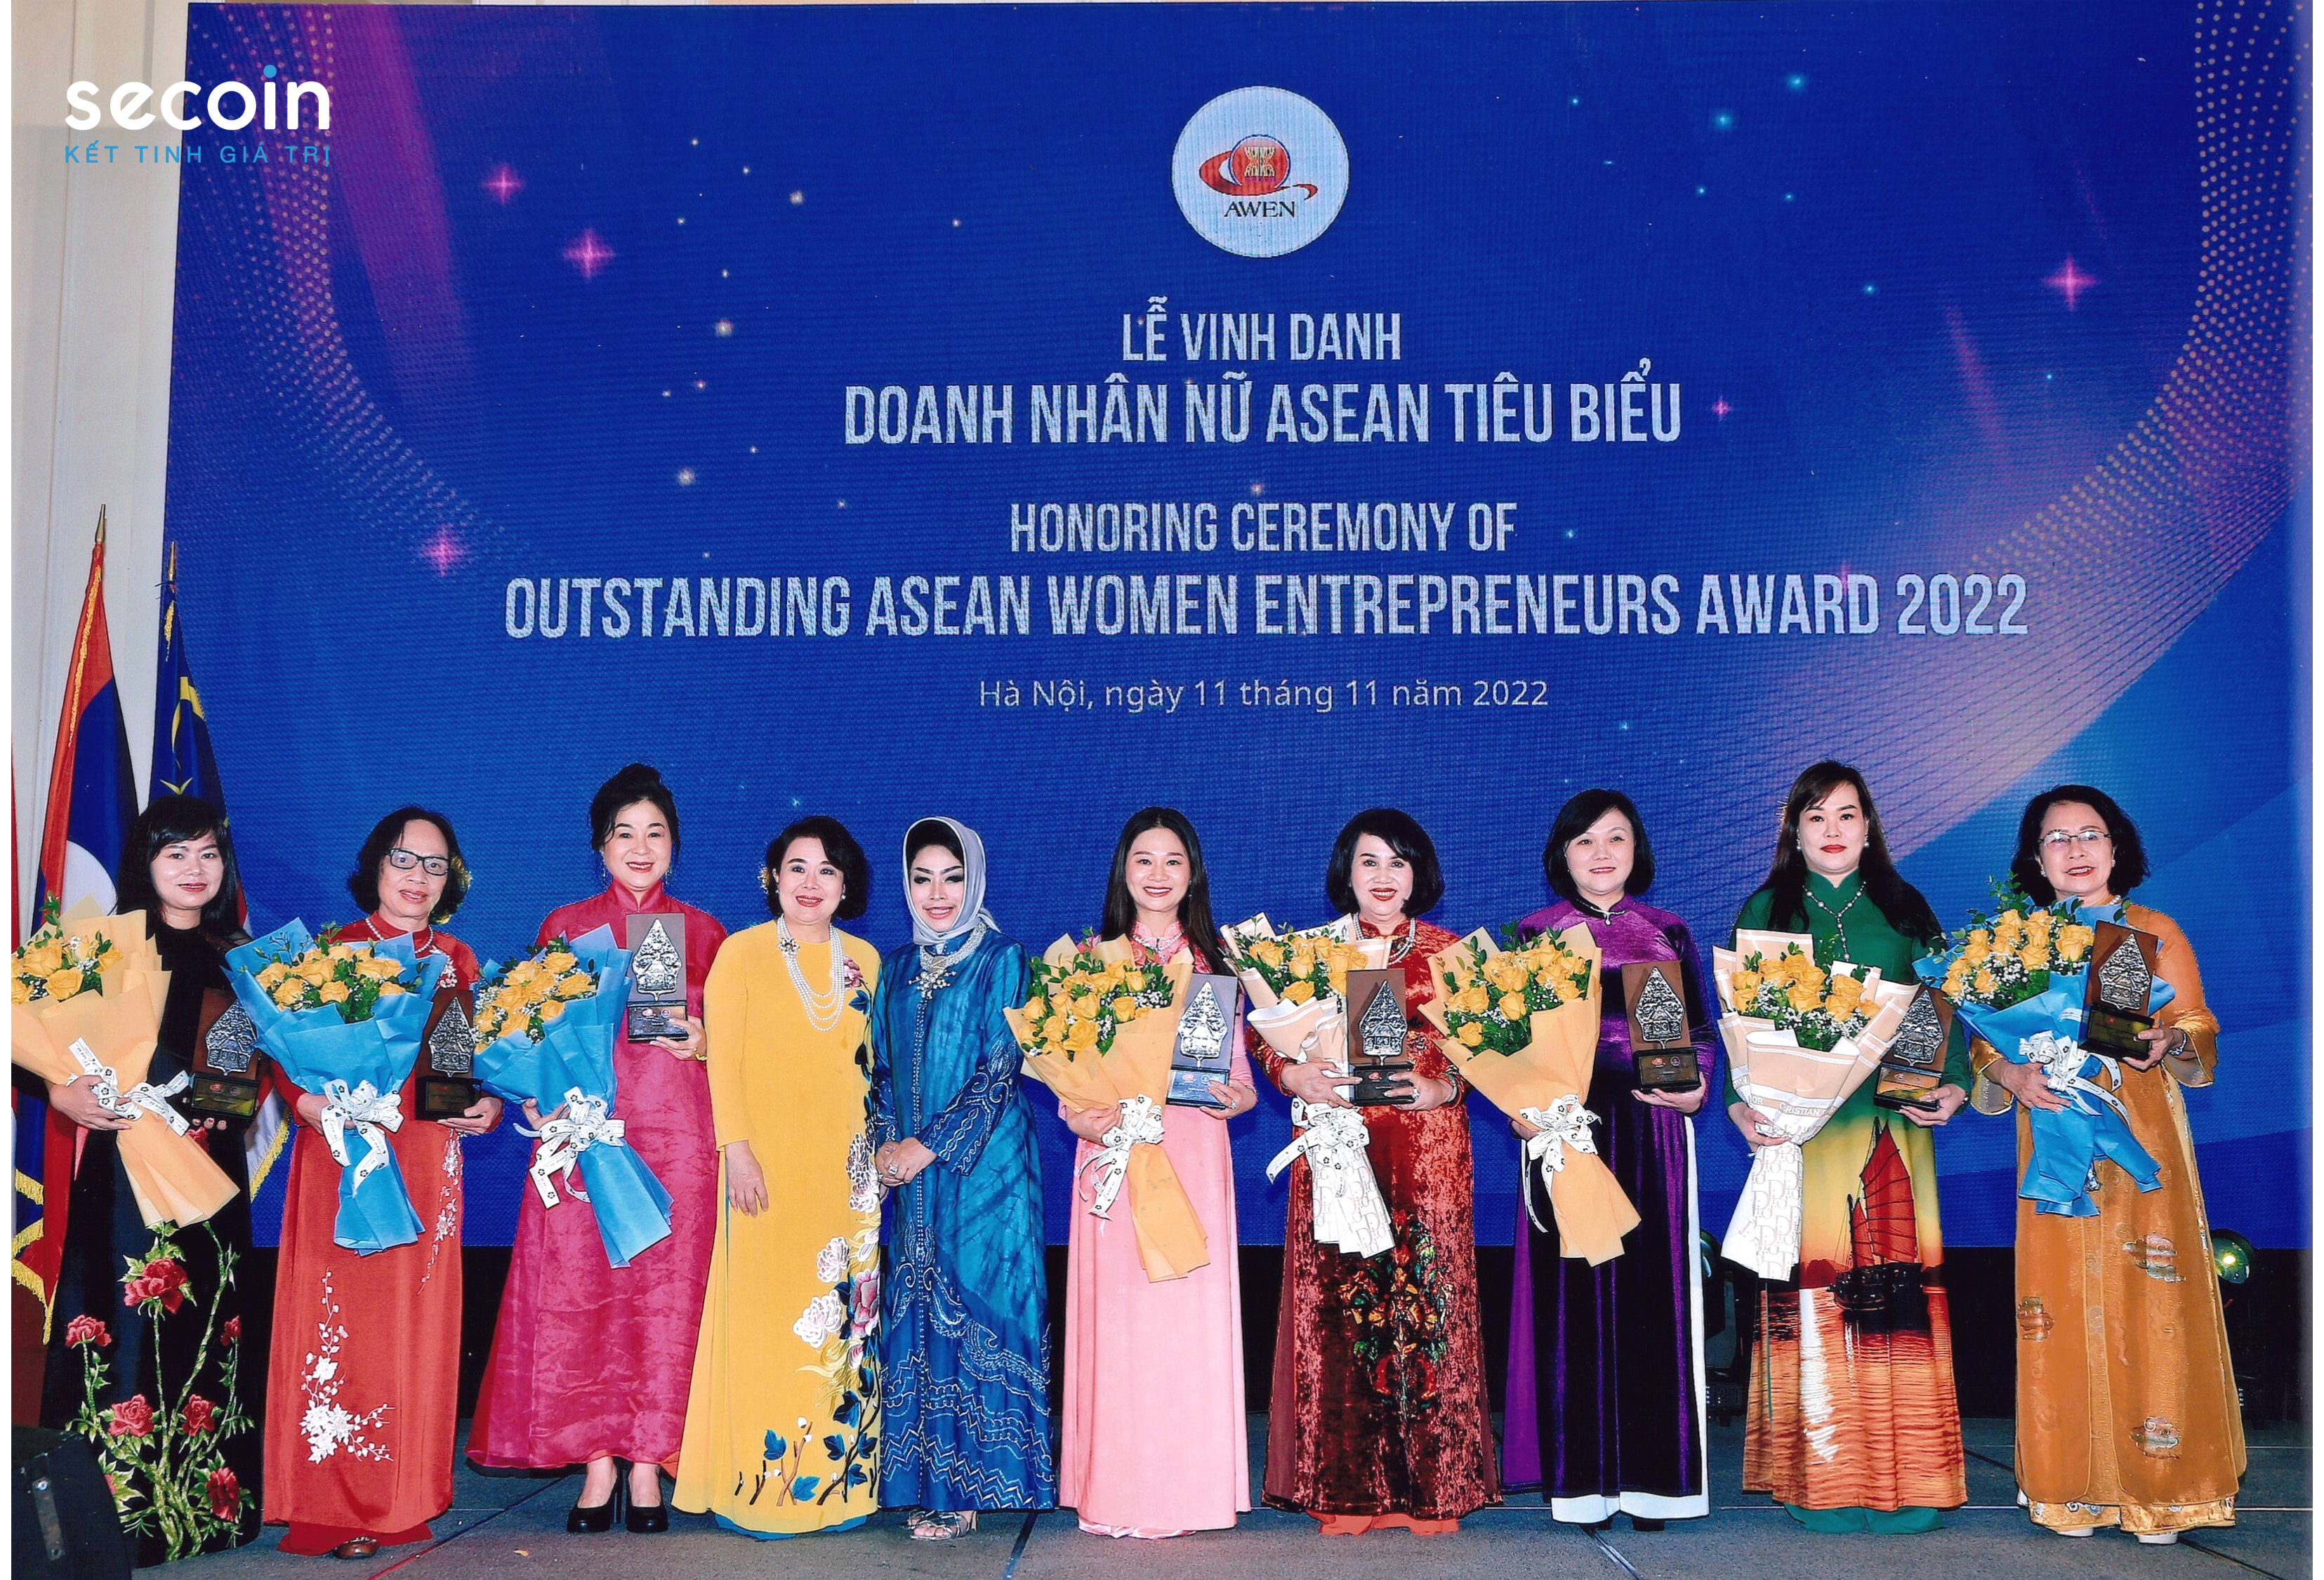 Bà Đinh Hoài Giang – Tổng Giám đốc Secoin được vinh danh “Doanh nhân nữ Asean tiêu biểu 2022”